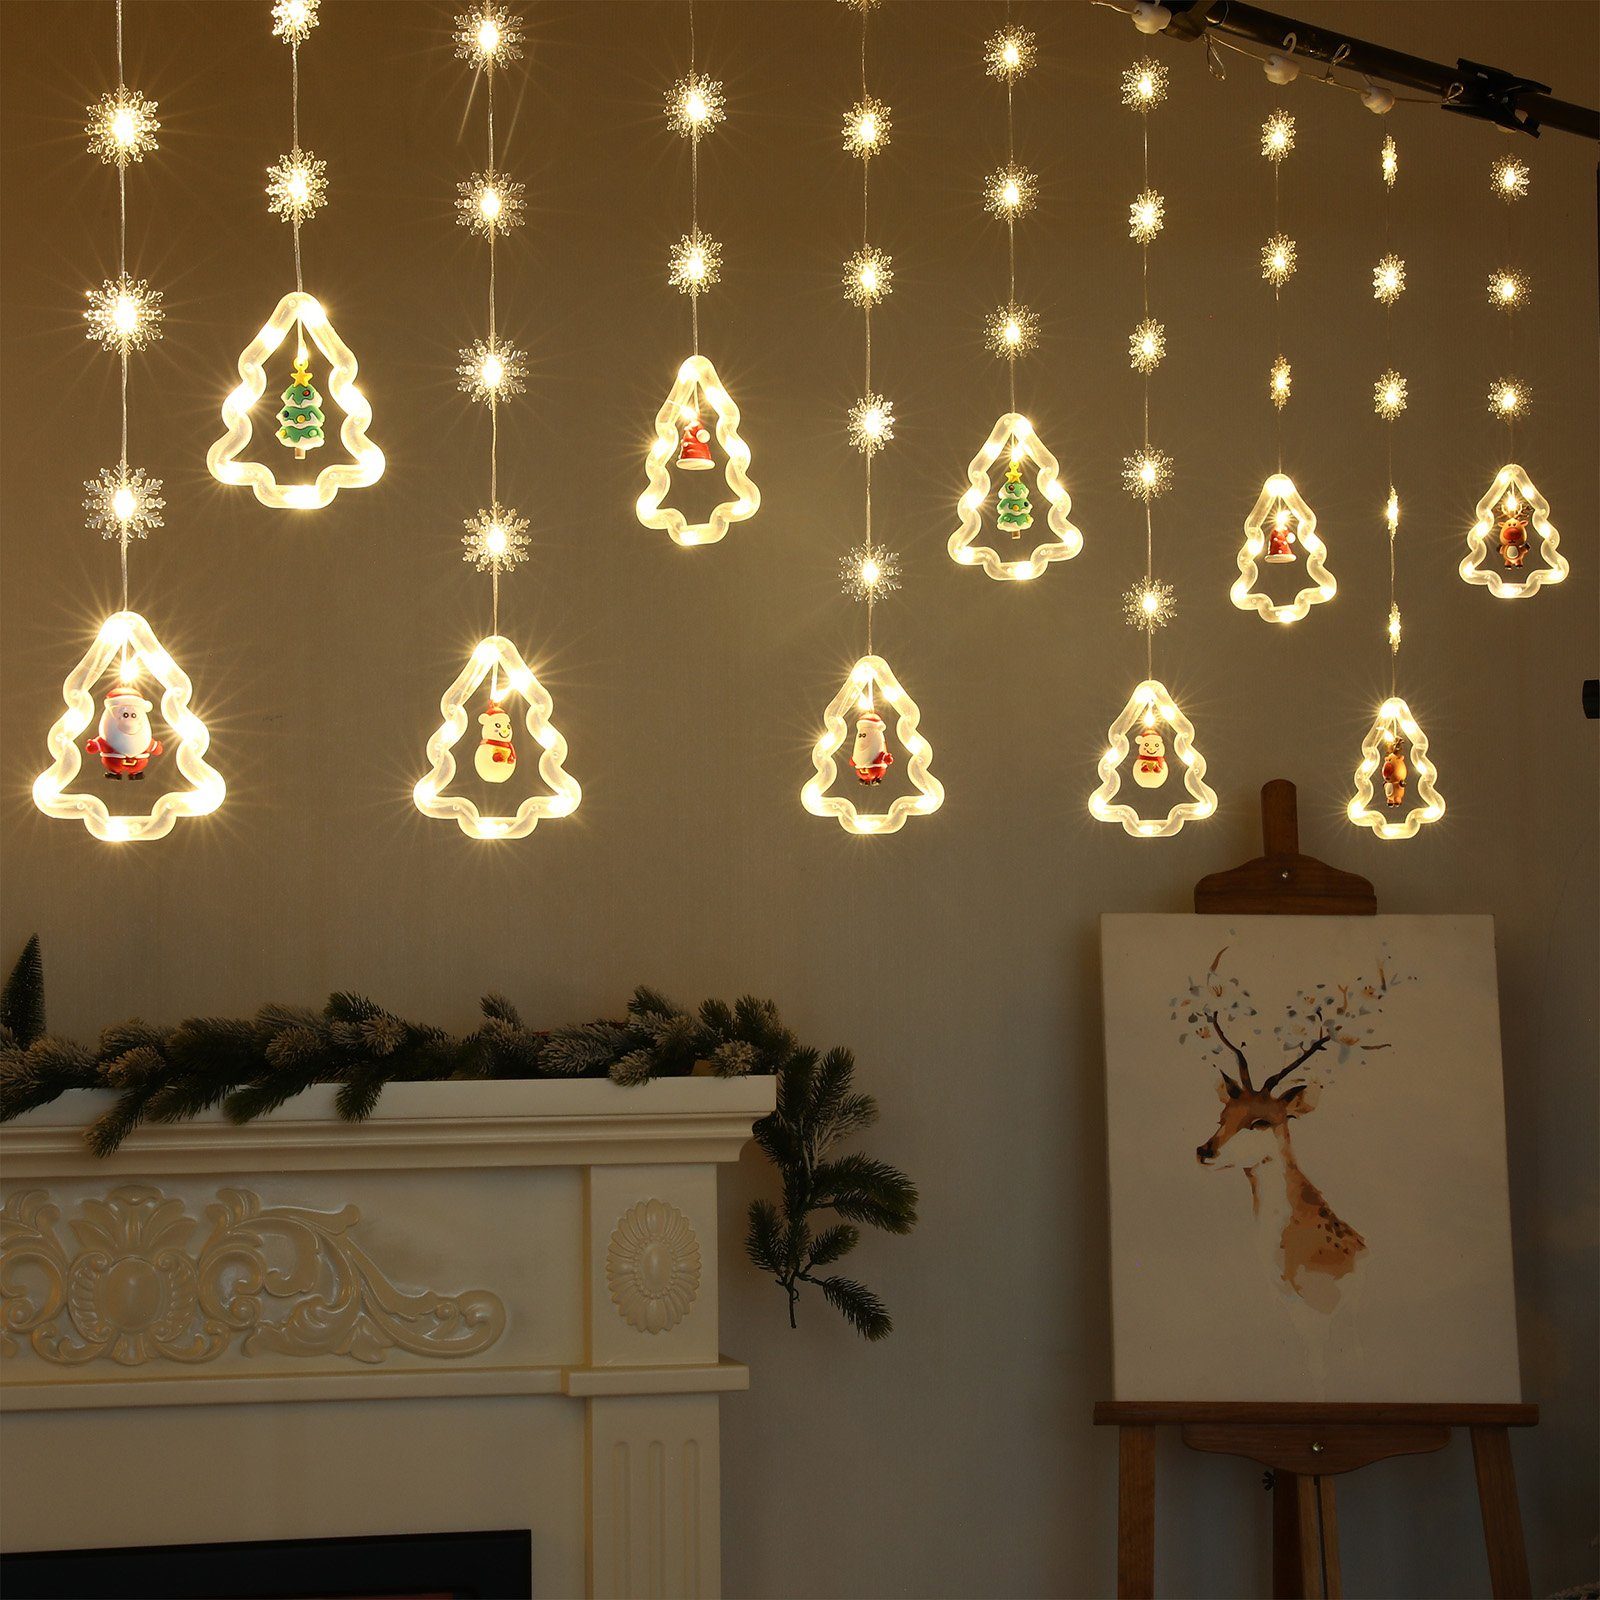 für Glitzermodi, LED-Lichtervorhang Schneeflocke, 10 8 Weihnachtsparty-Dekoration, Silikon Rosnek Weihnachtsschmuck 3M,